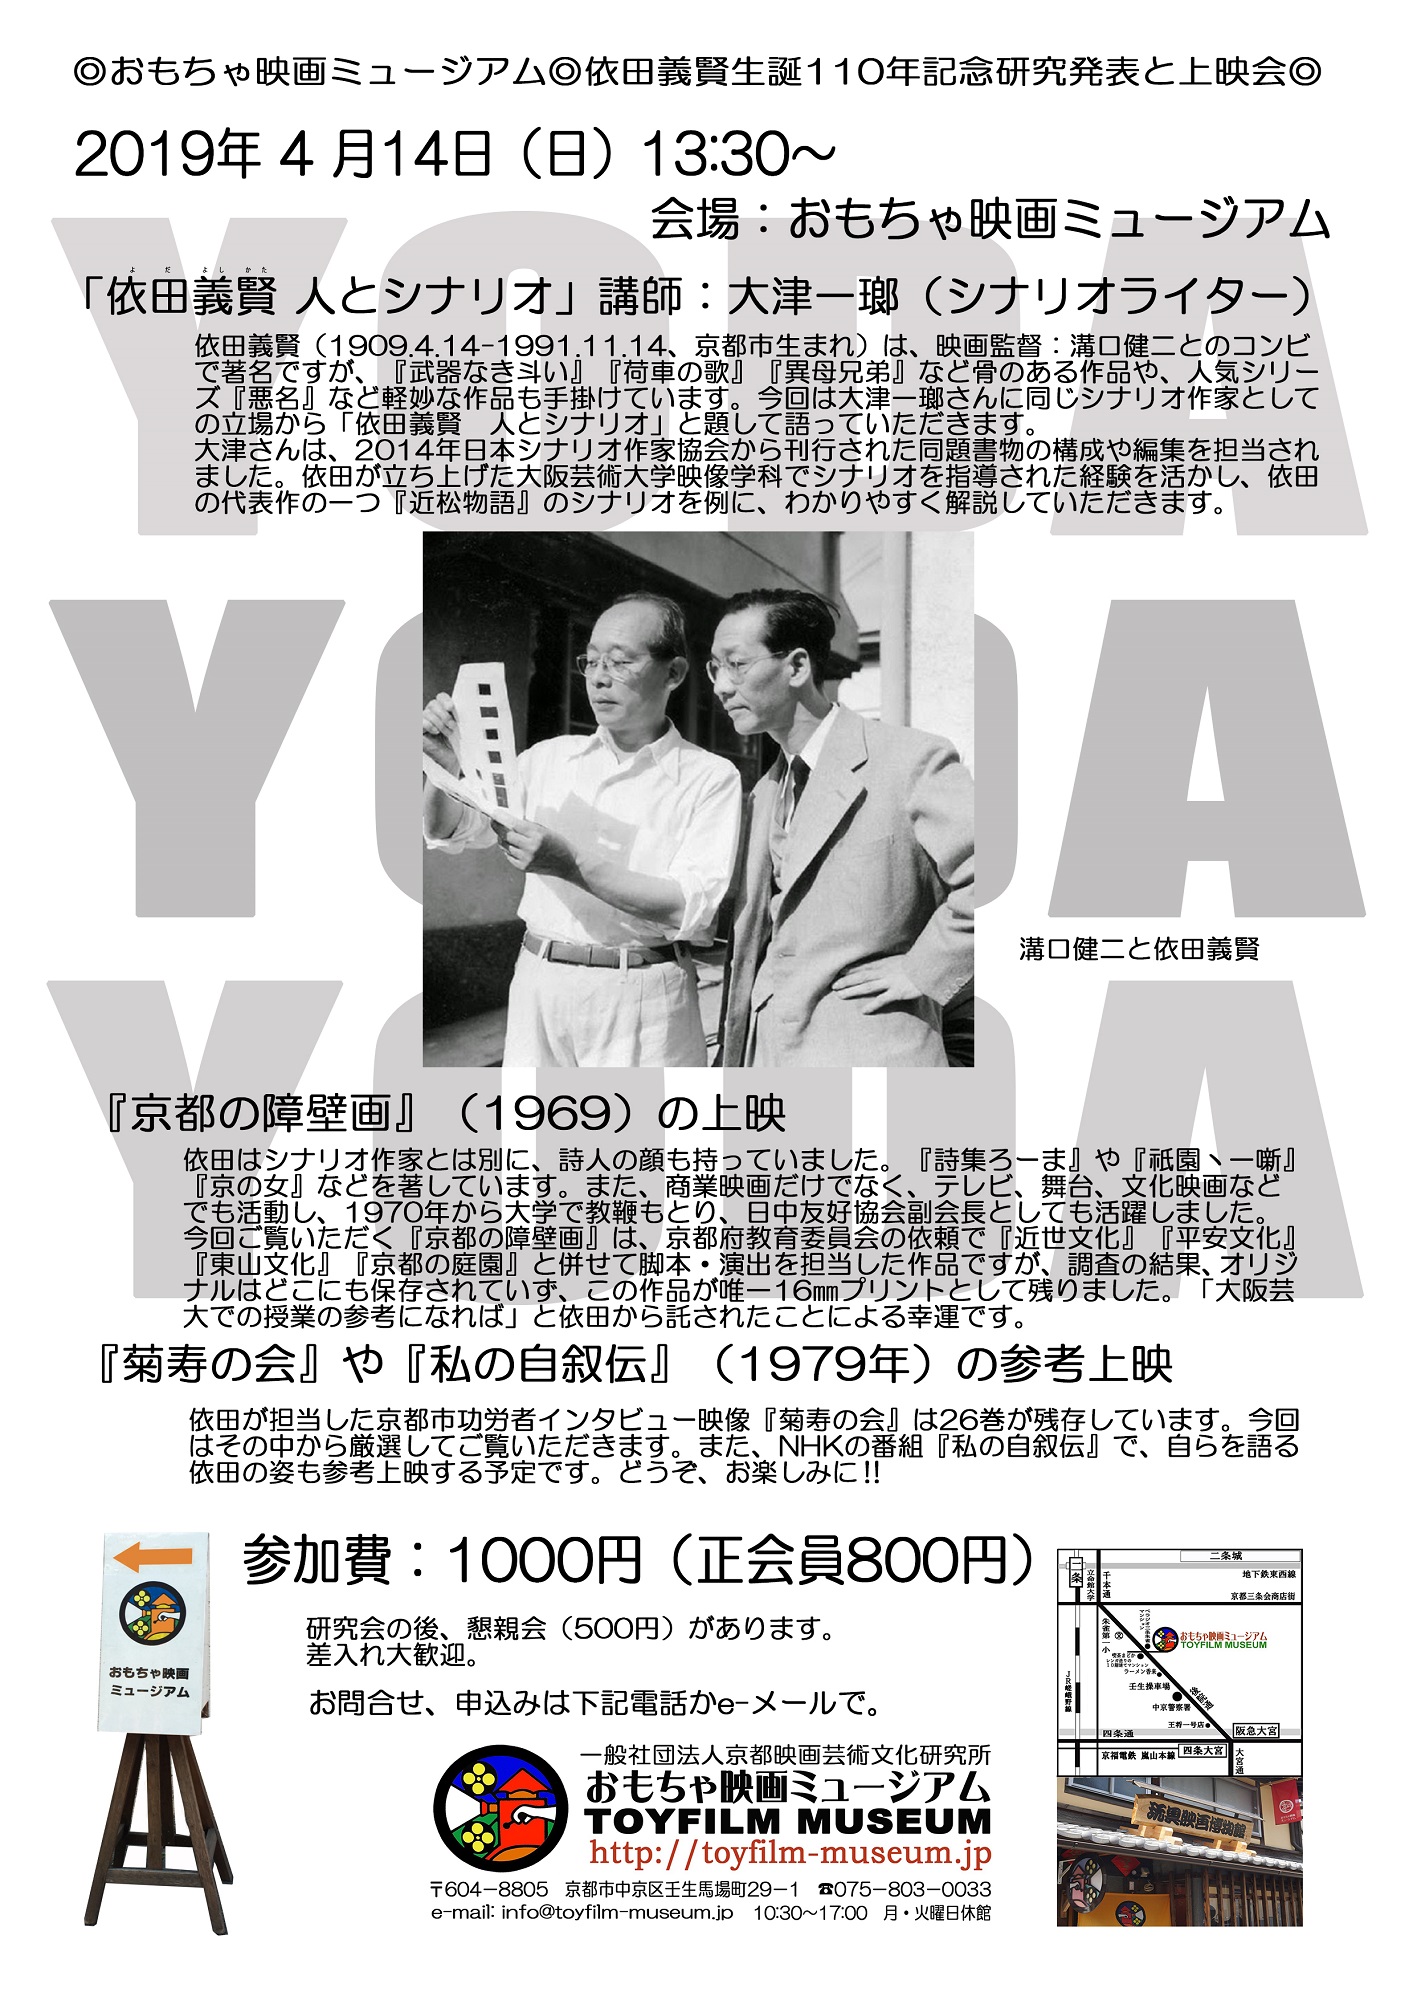 依田義賢生誕110年記念イベント「依田義賢  人とシナリオ」について